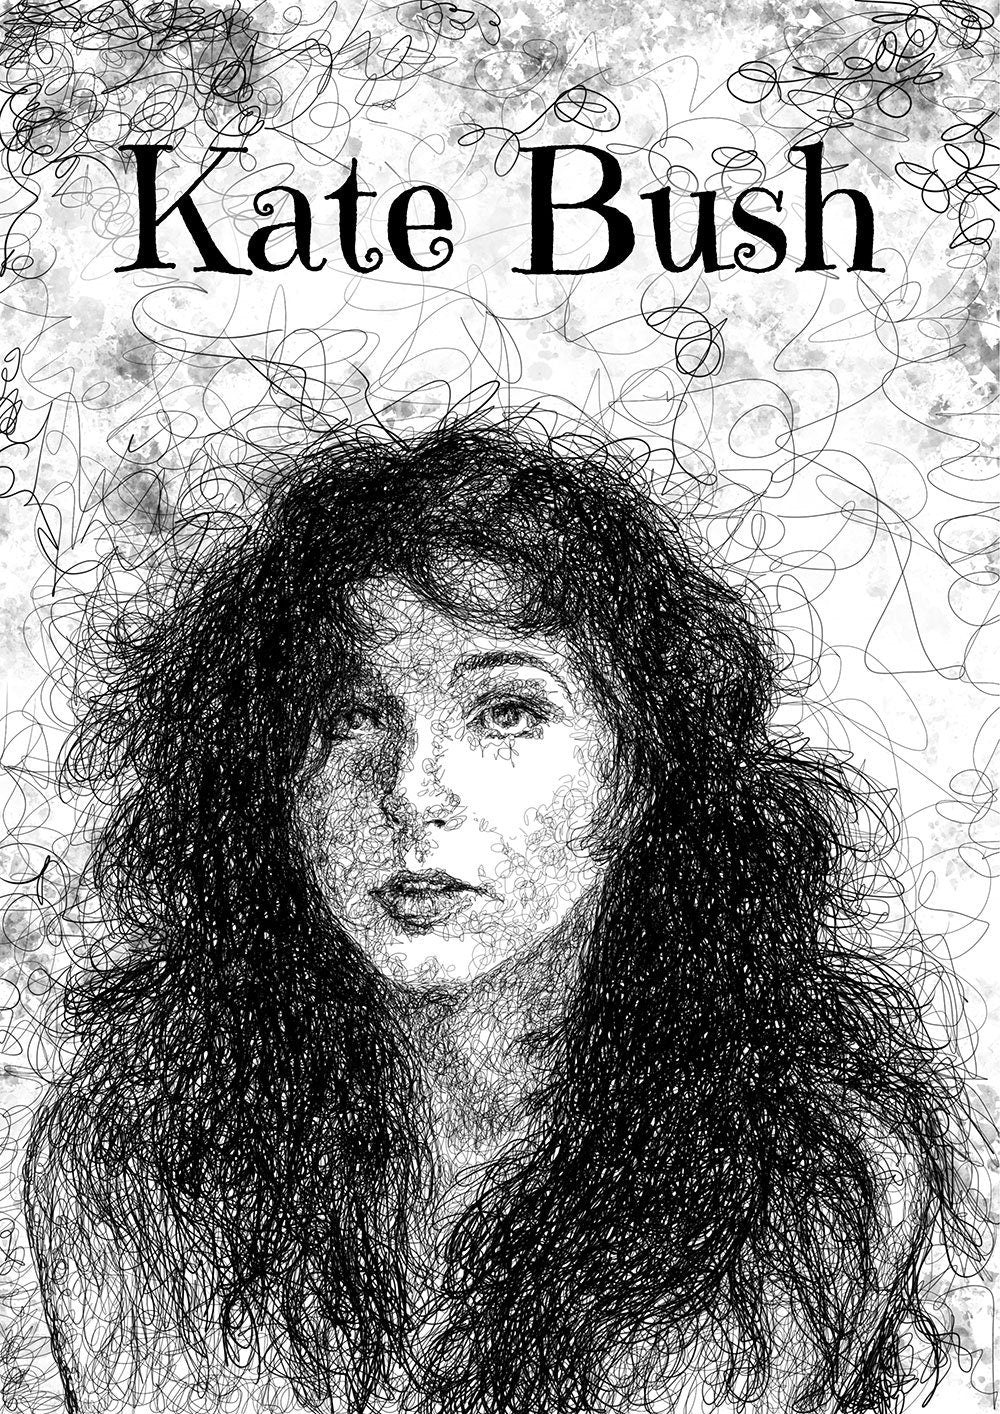 Kate Bush art print unframed, Kate Bush Poster, Kate Bush Wall Art, Kate Bush fan gift, Line art, squiggly line art, abstract line art